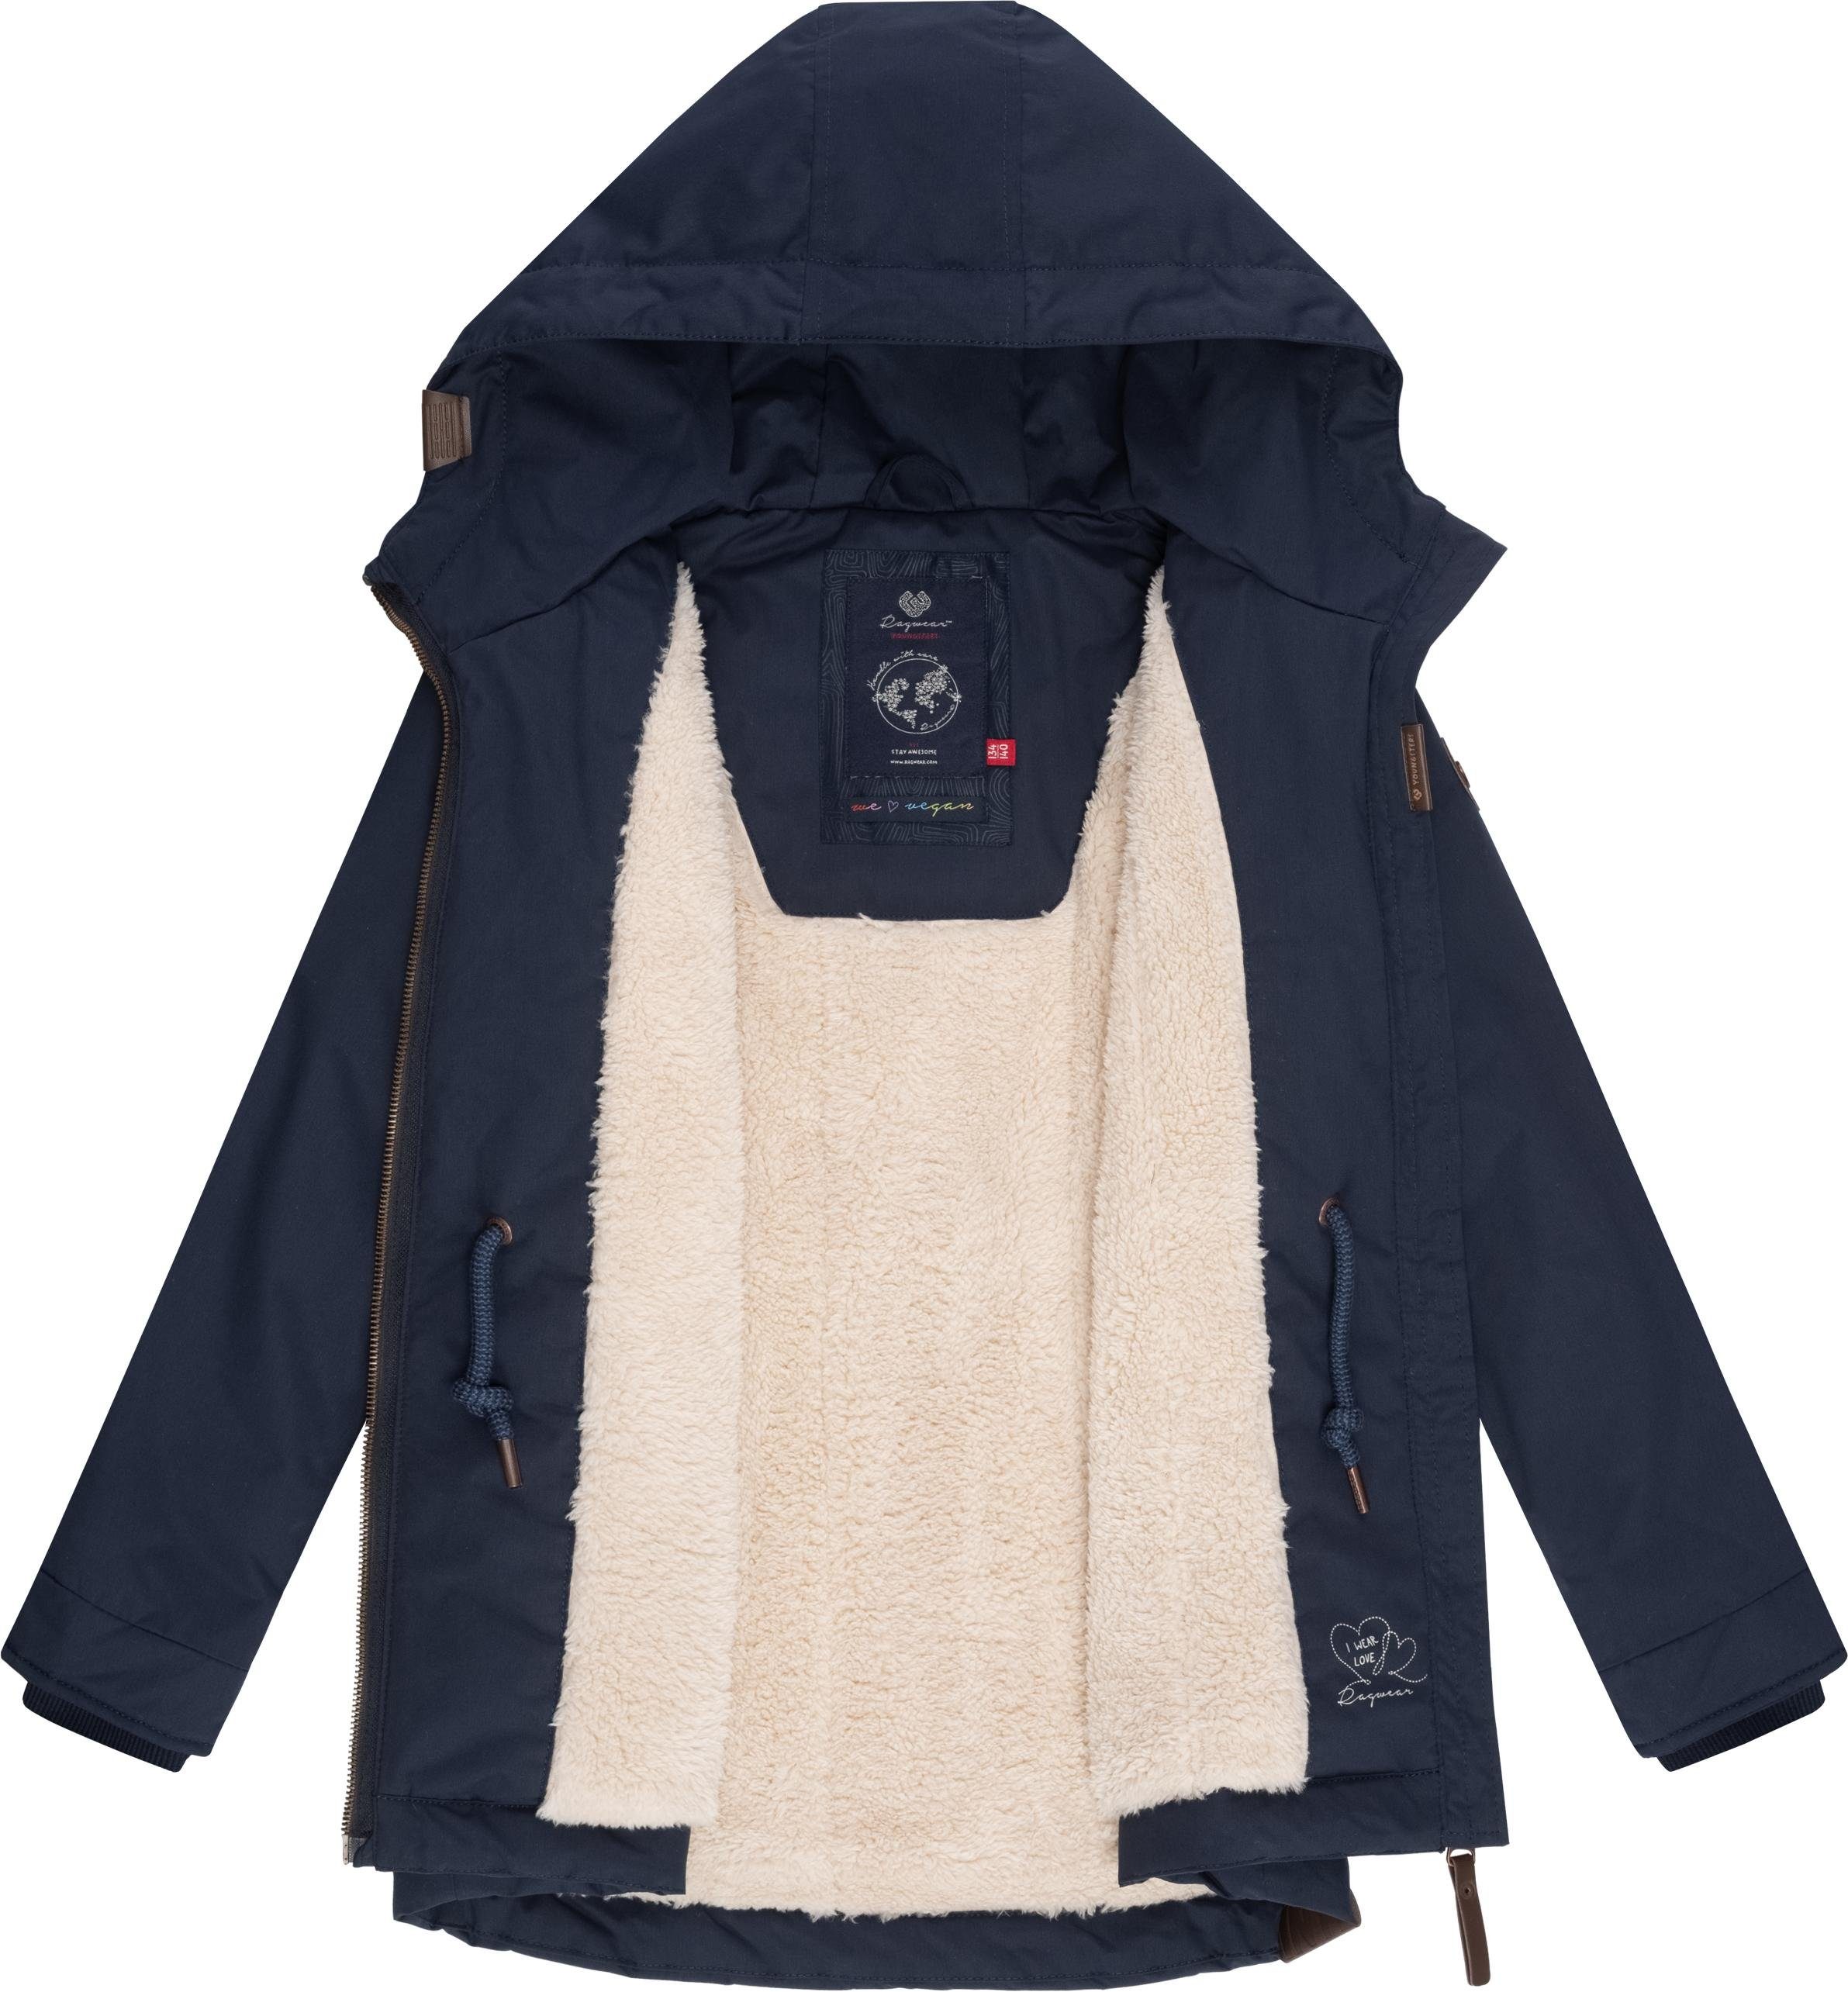 Jacke mit flauschig marine Layra Ragwear Teddyfell-Innenfutter Winterjacke warmem